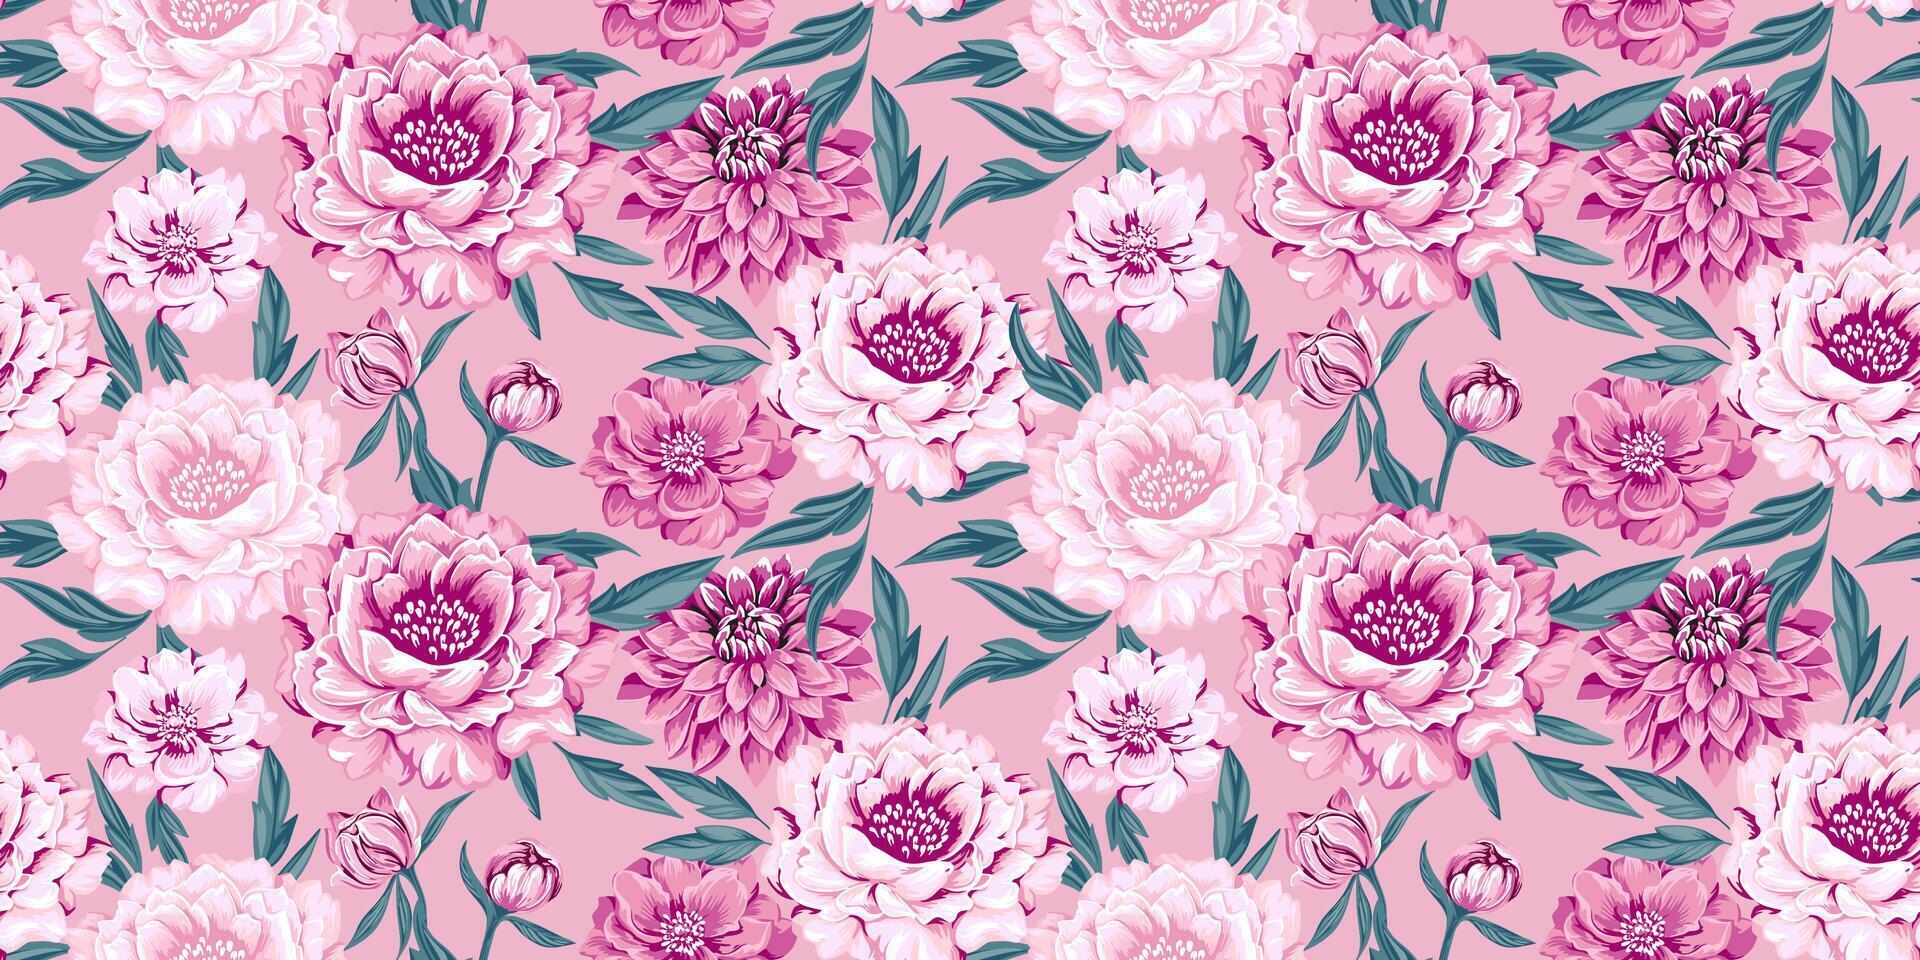 sömlös konstnärlig abstrakt blomning blommor pioner, georginer och löv mönster. vektor hand ritade. chic, skön rosa blommig gobeläng. mall för design, textil, mode, tyg, tapet